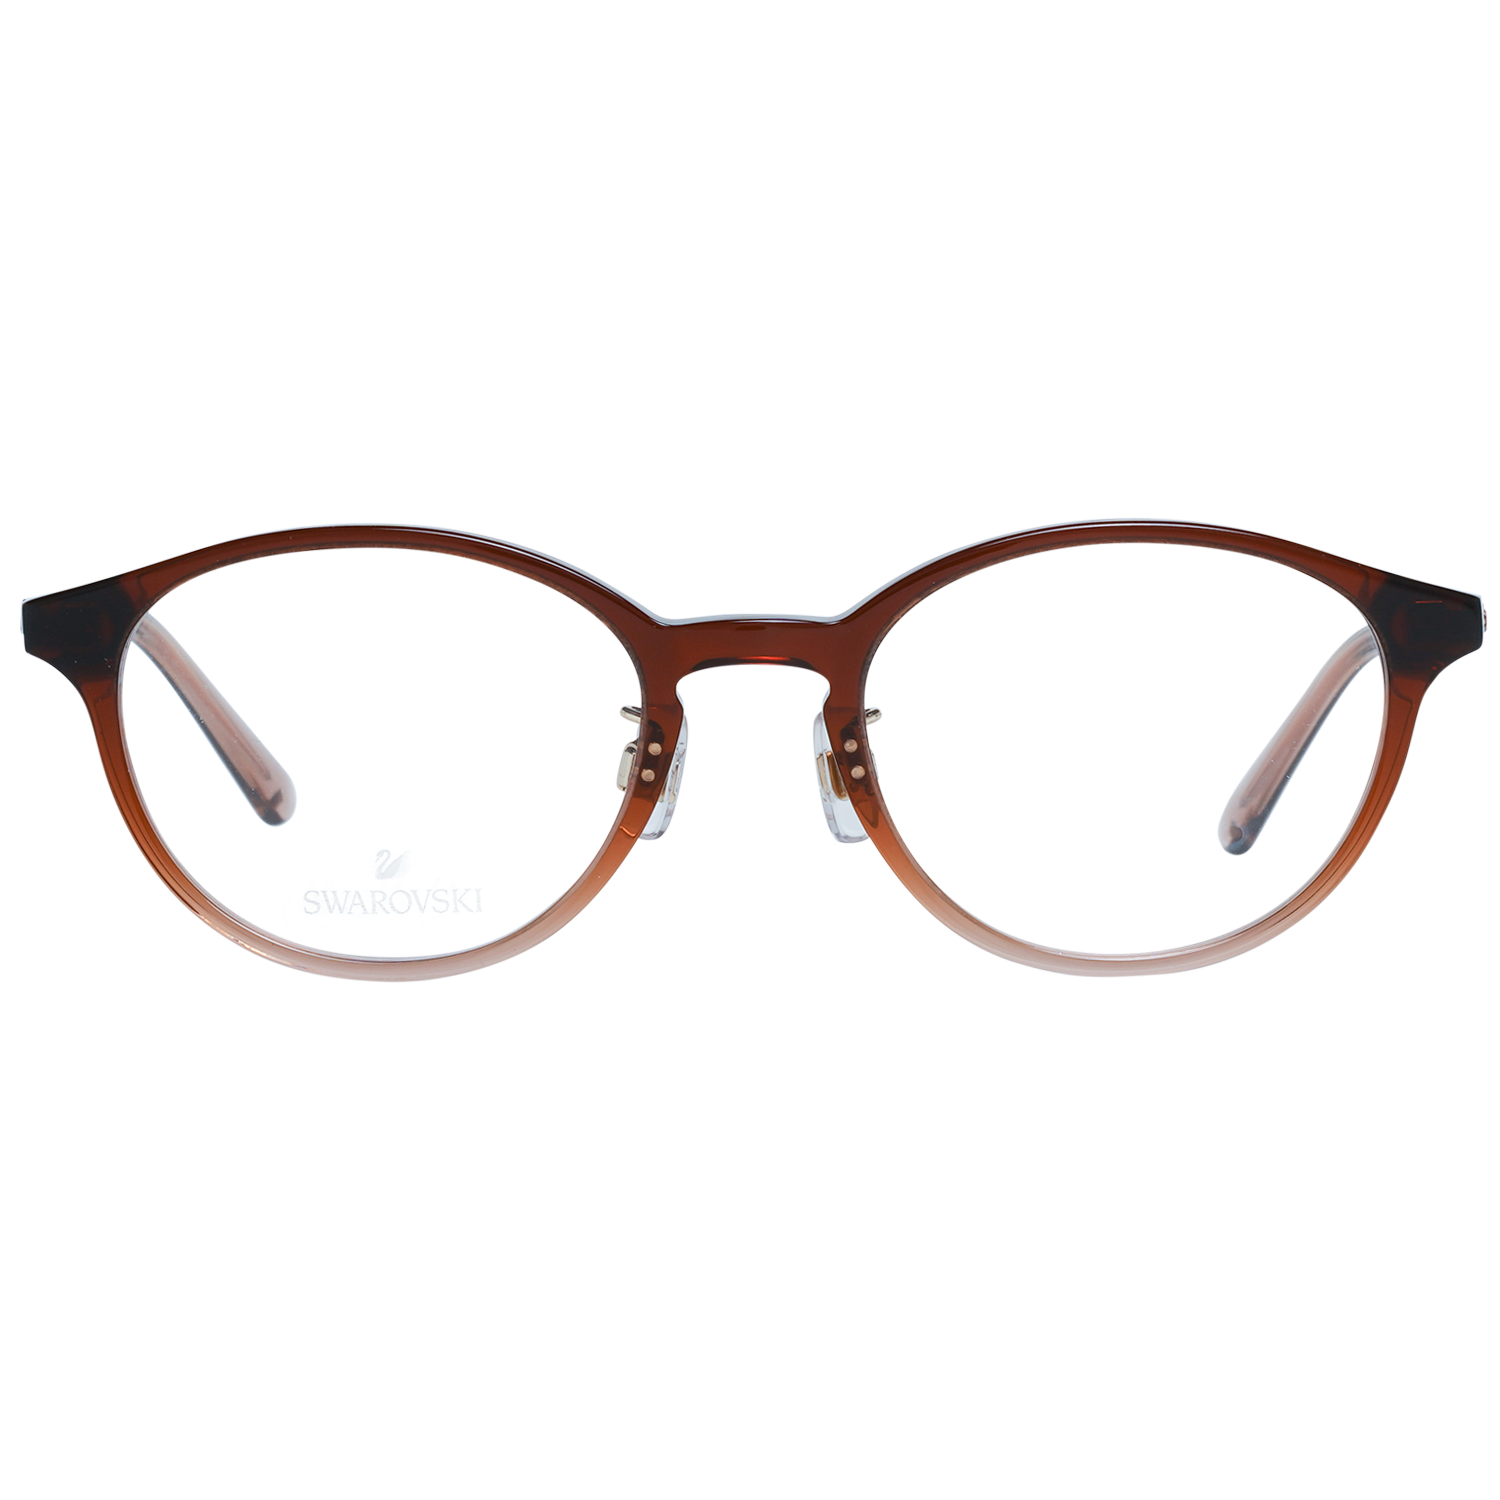 Swarovski Frames Swarovski Women Glasses Optical Frame SK5407-D 050 49 Eyeglasses Eyewear UK USA Australia 